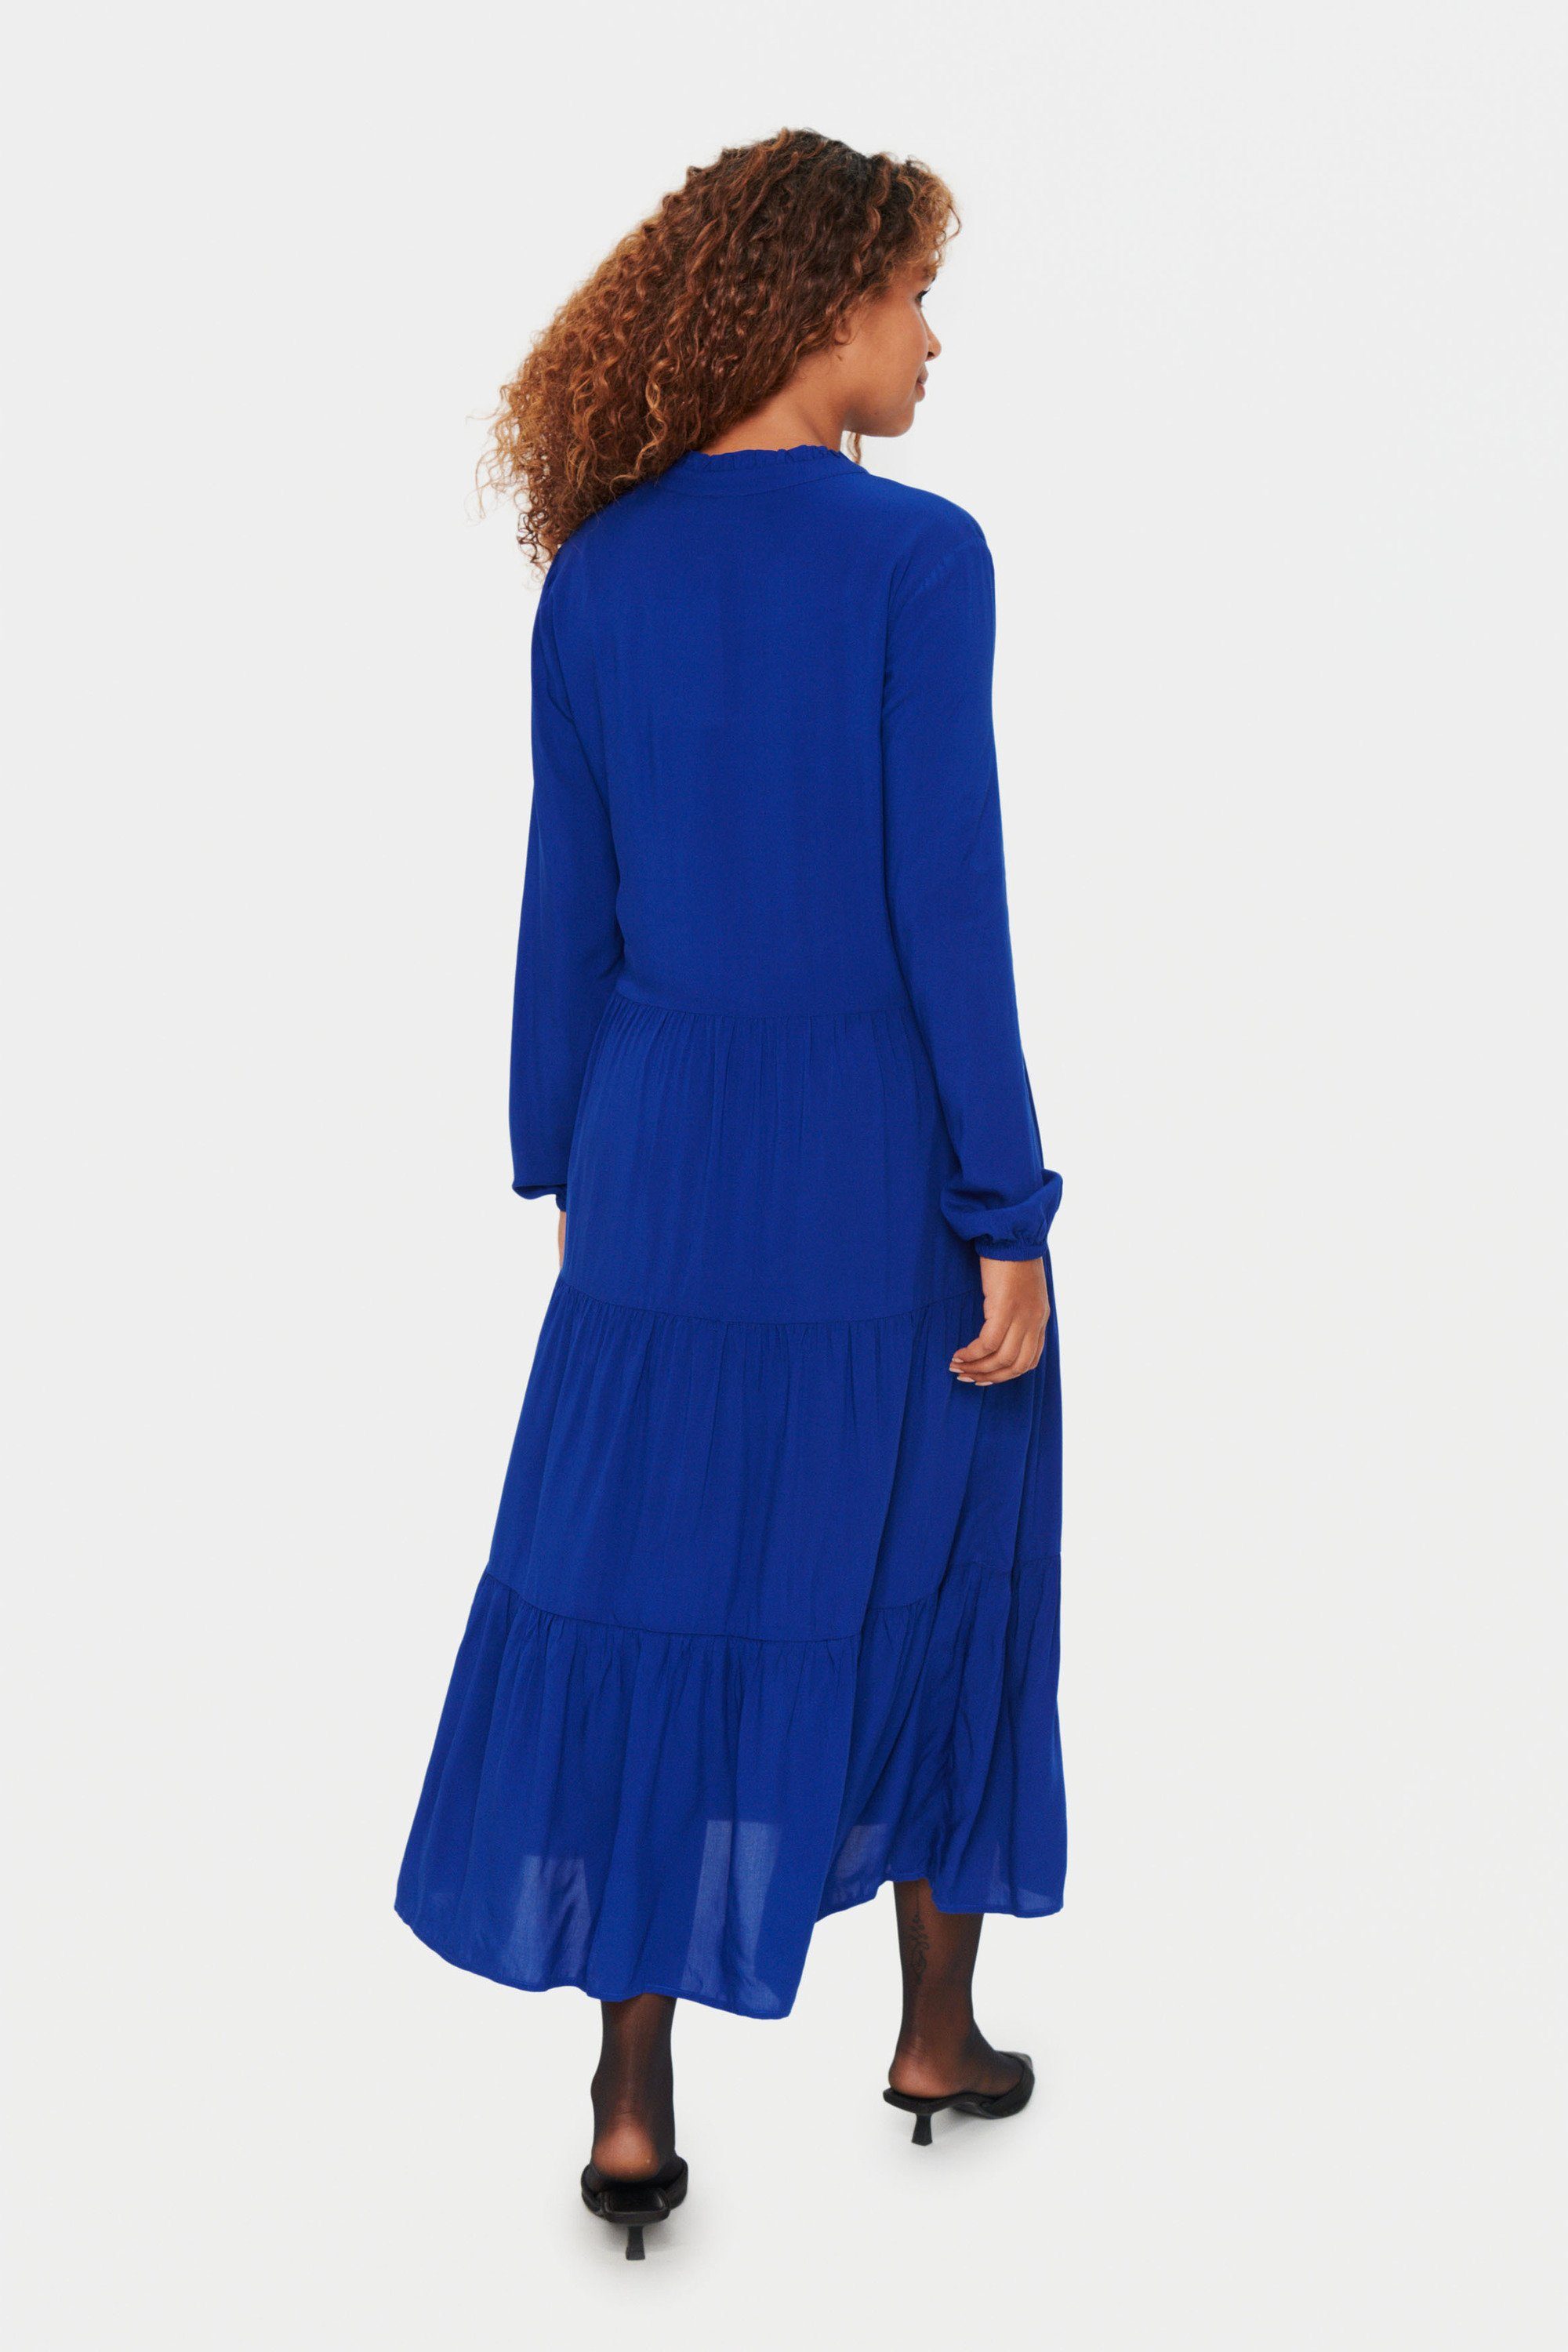 Blue Jerseykleid Sodalite Saint Tropez EdaSZ Kleid